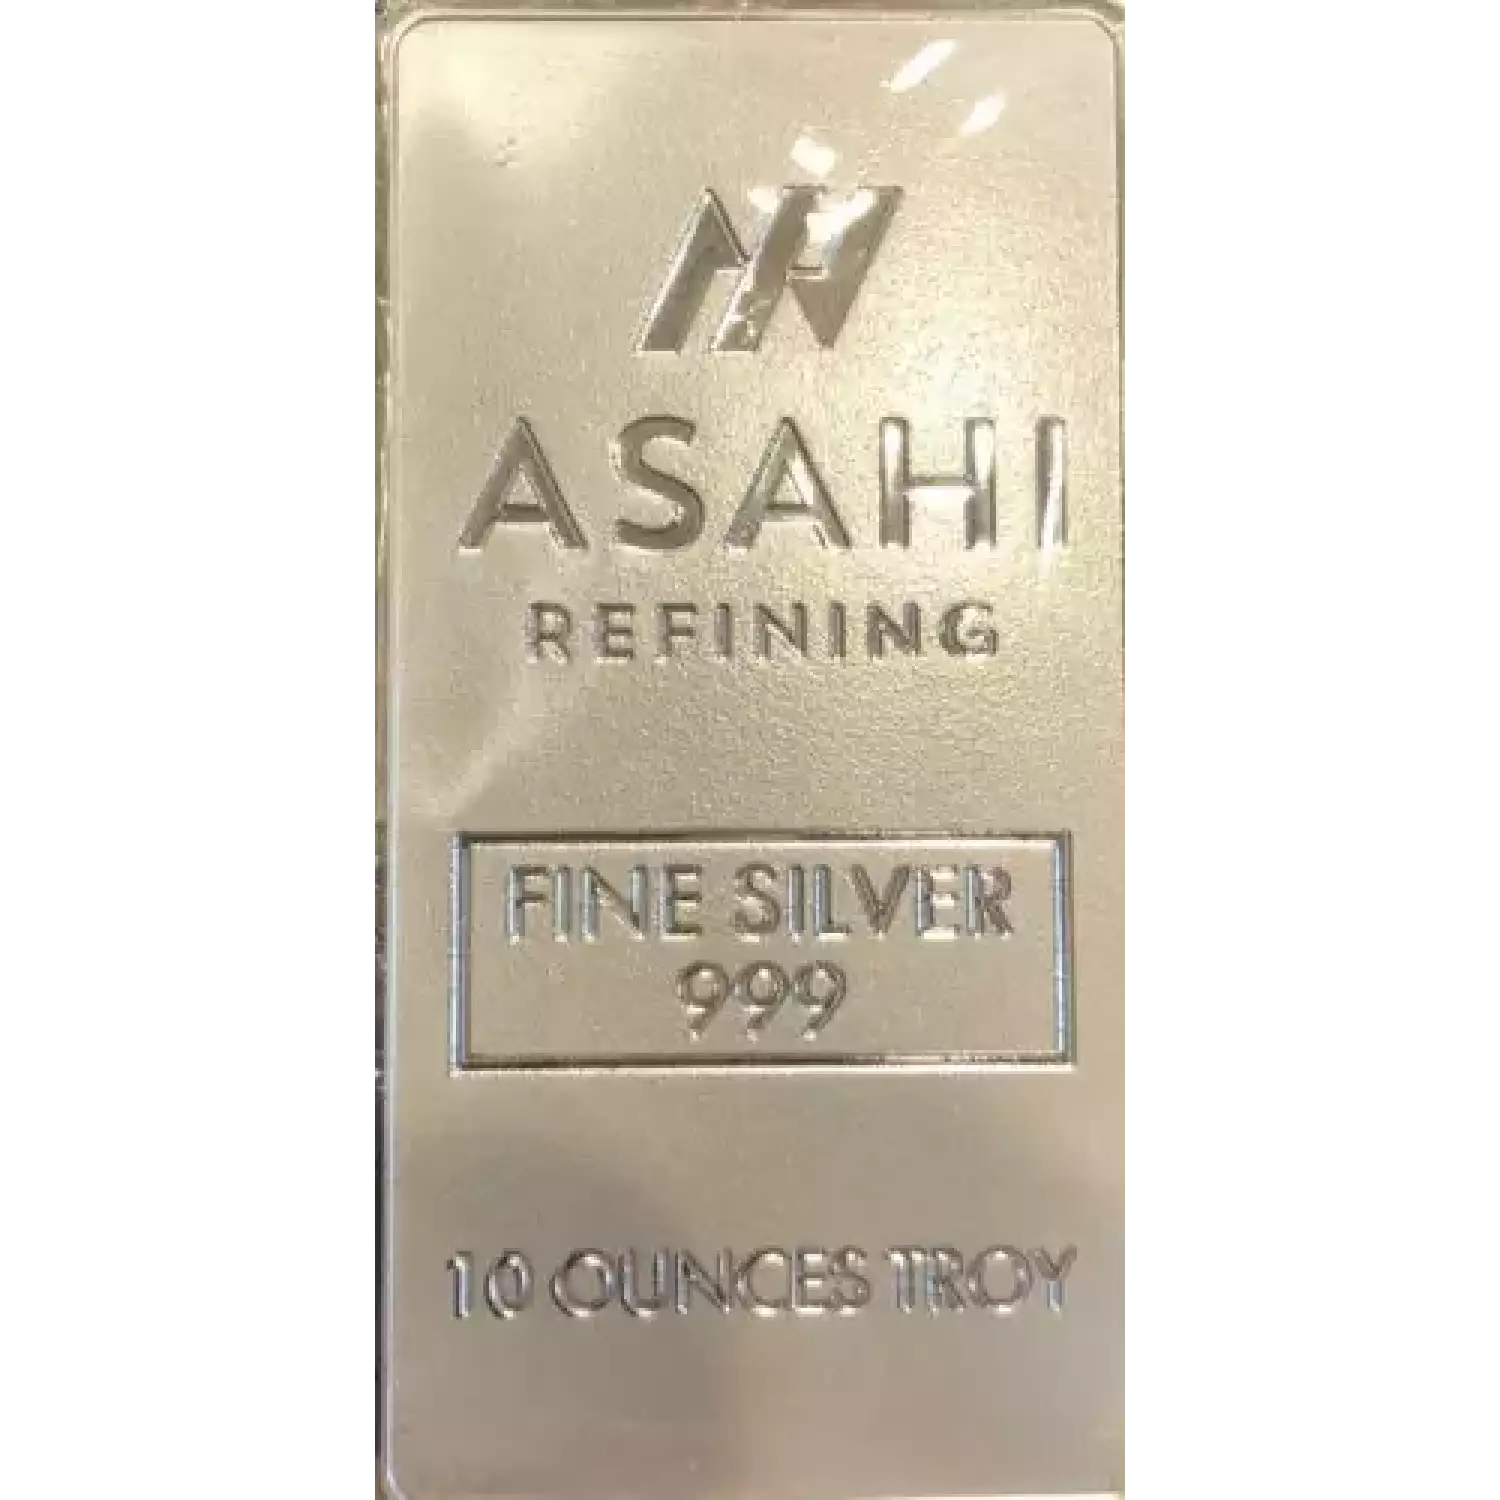 10oz Asahi Silver Bar